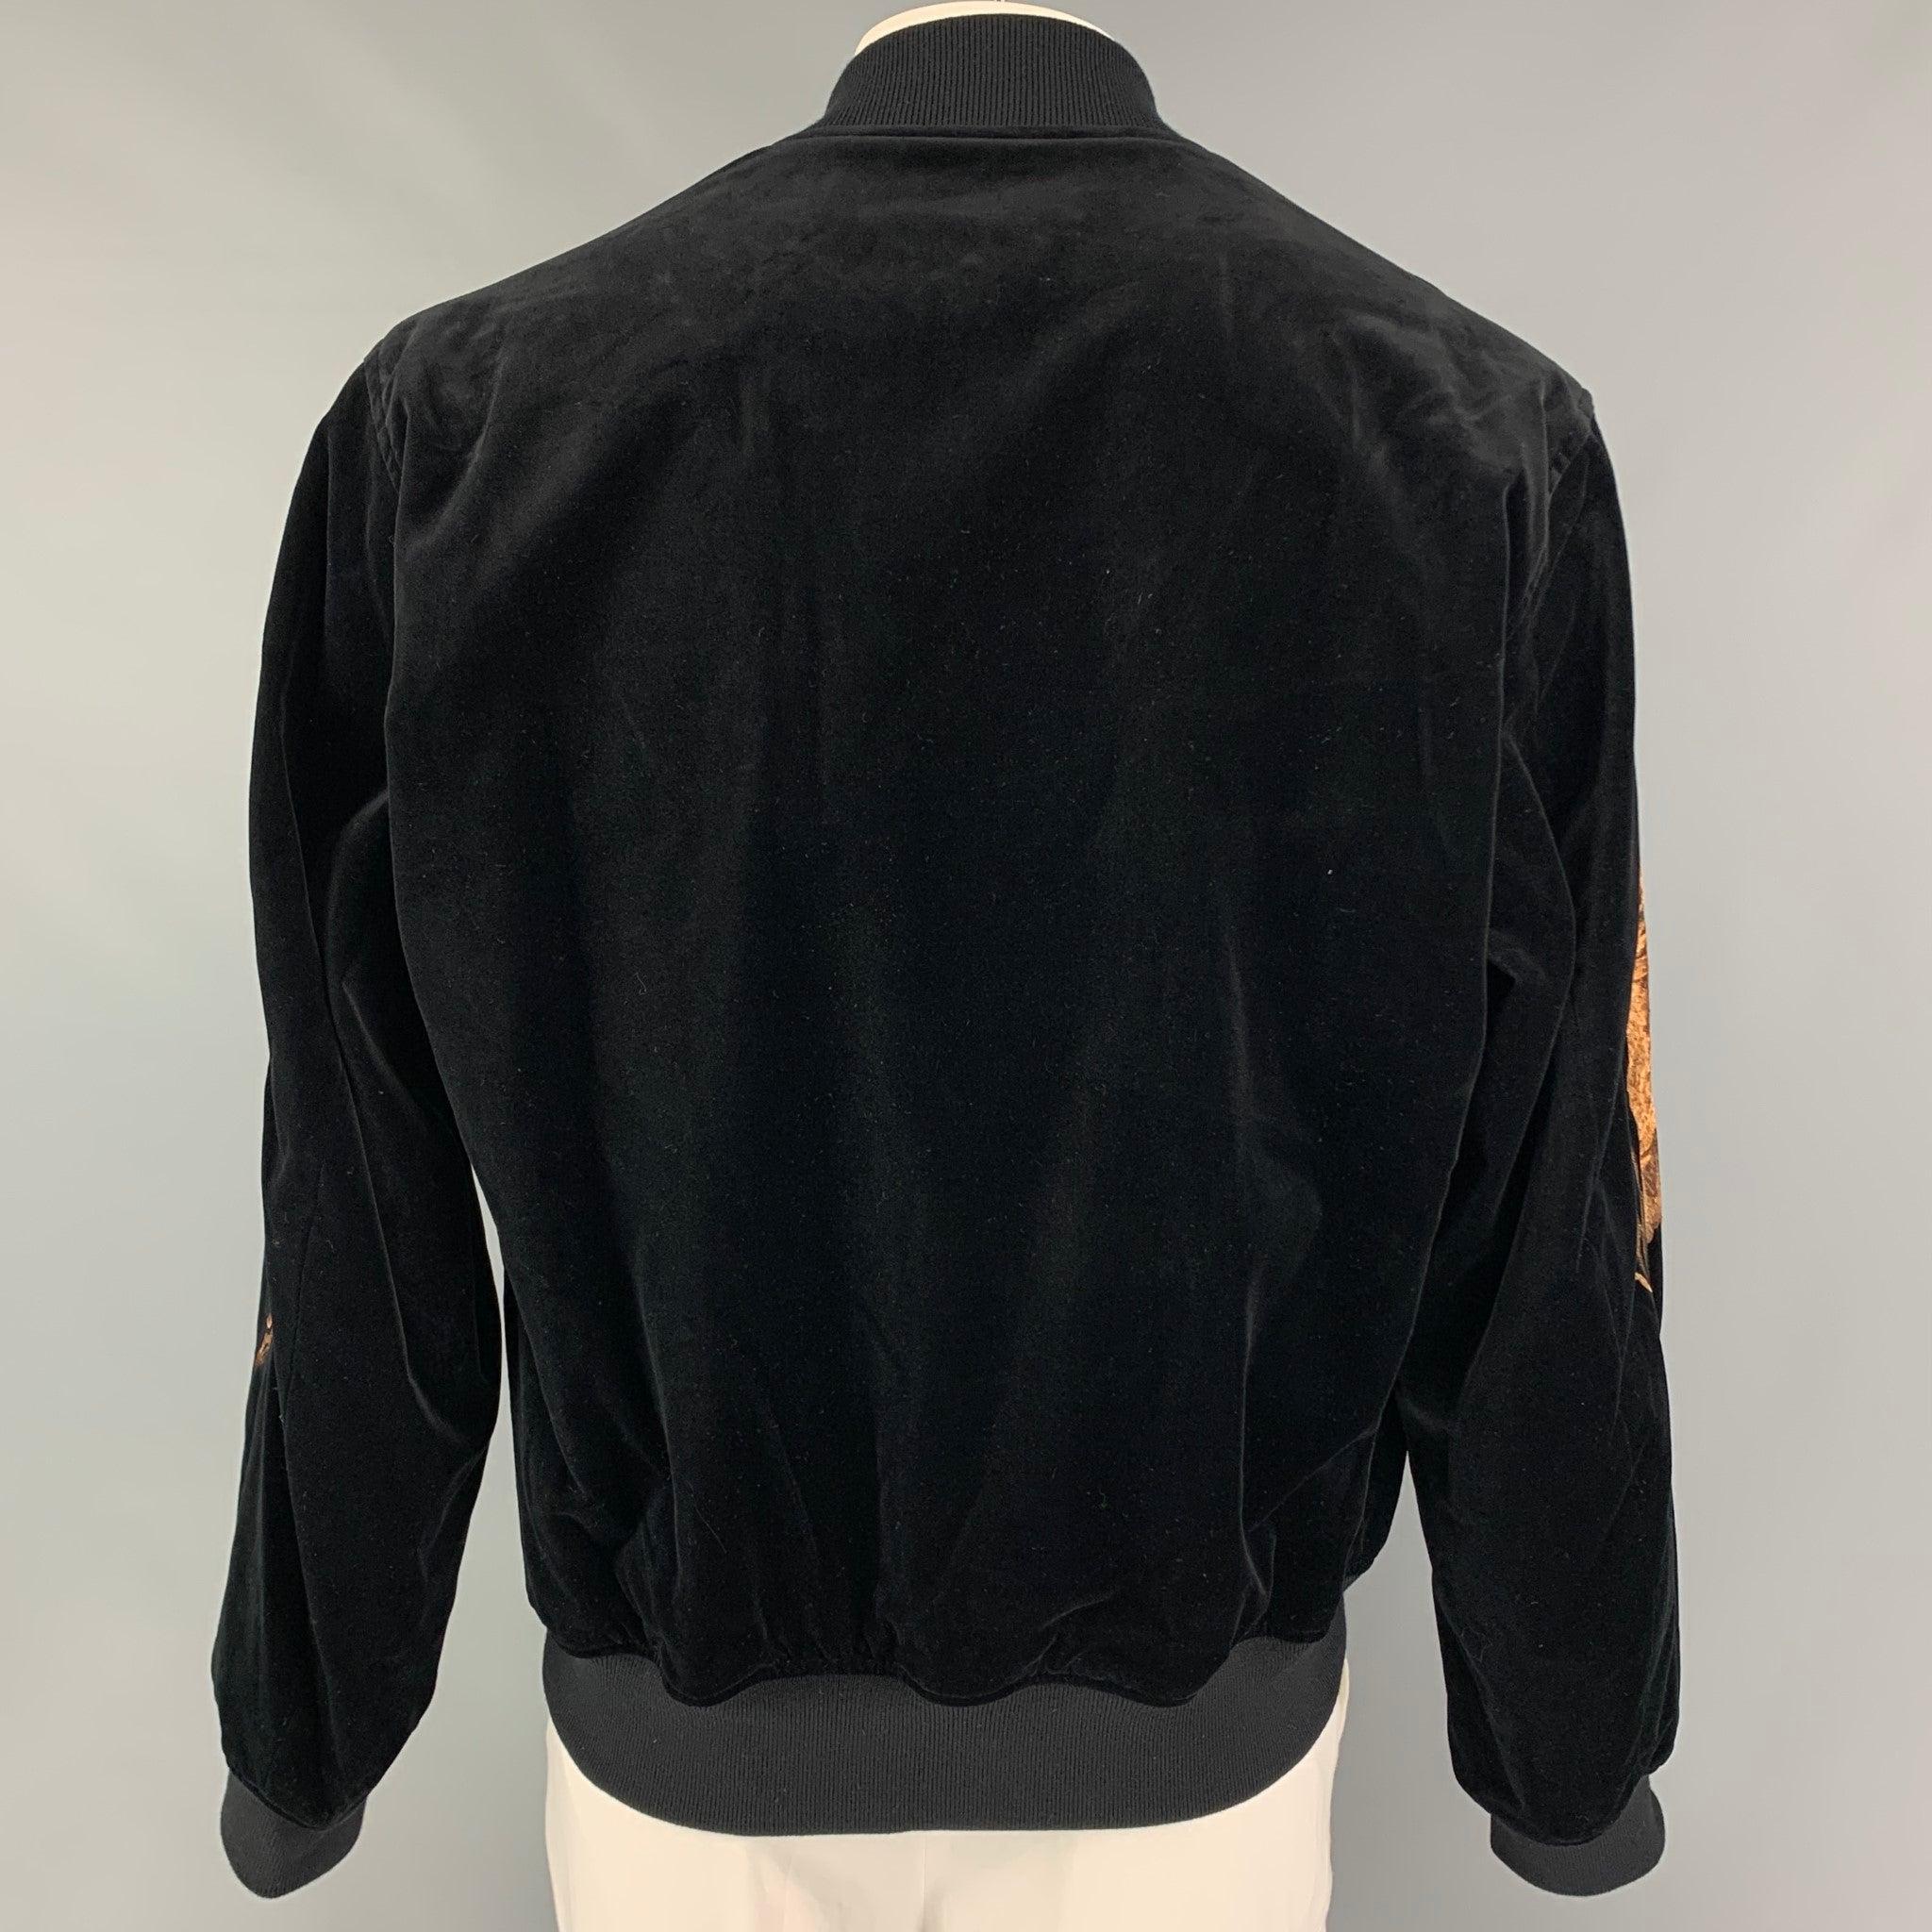 Men's CHRISTIAN DADA FW 19 Size 42 Black Cotton Velvet Embroidery Bomber Jacket